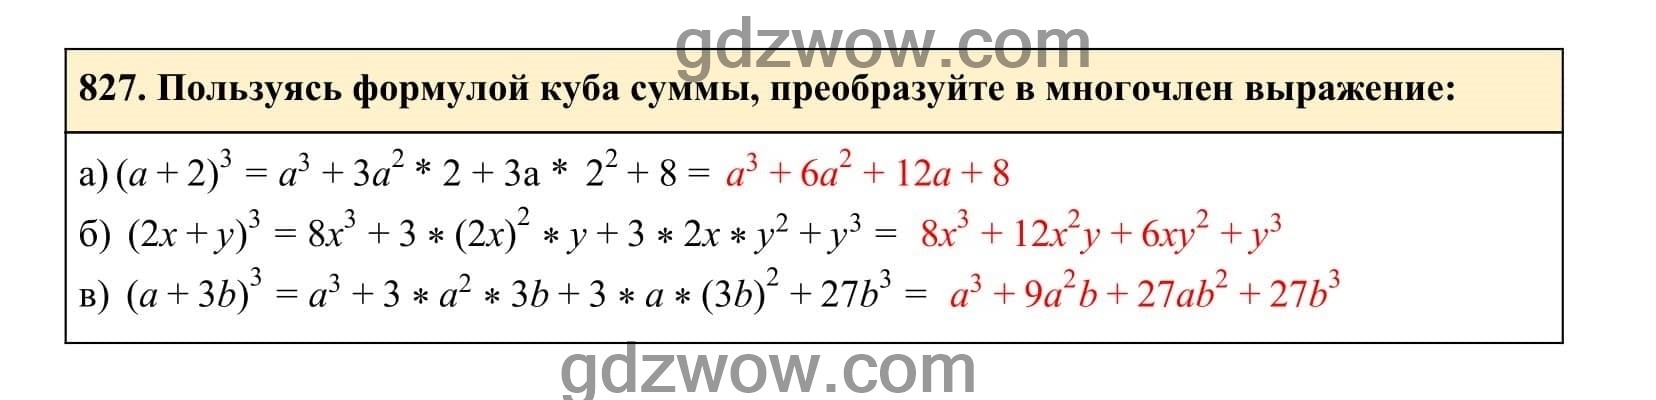 Упражнение 827 - ГДЗ по Алгебре 7 класс Учебник Макарычев (решебник) - GDZwow